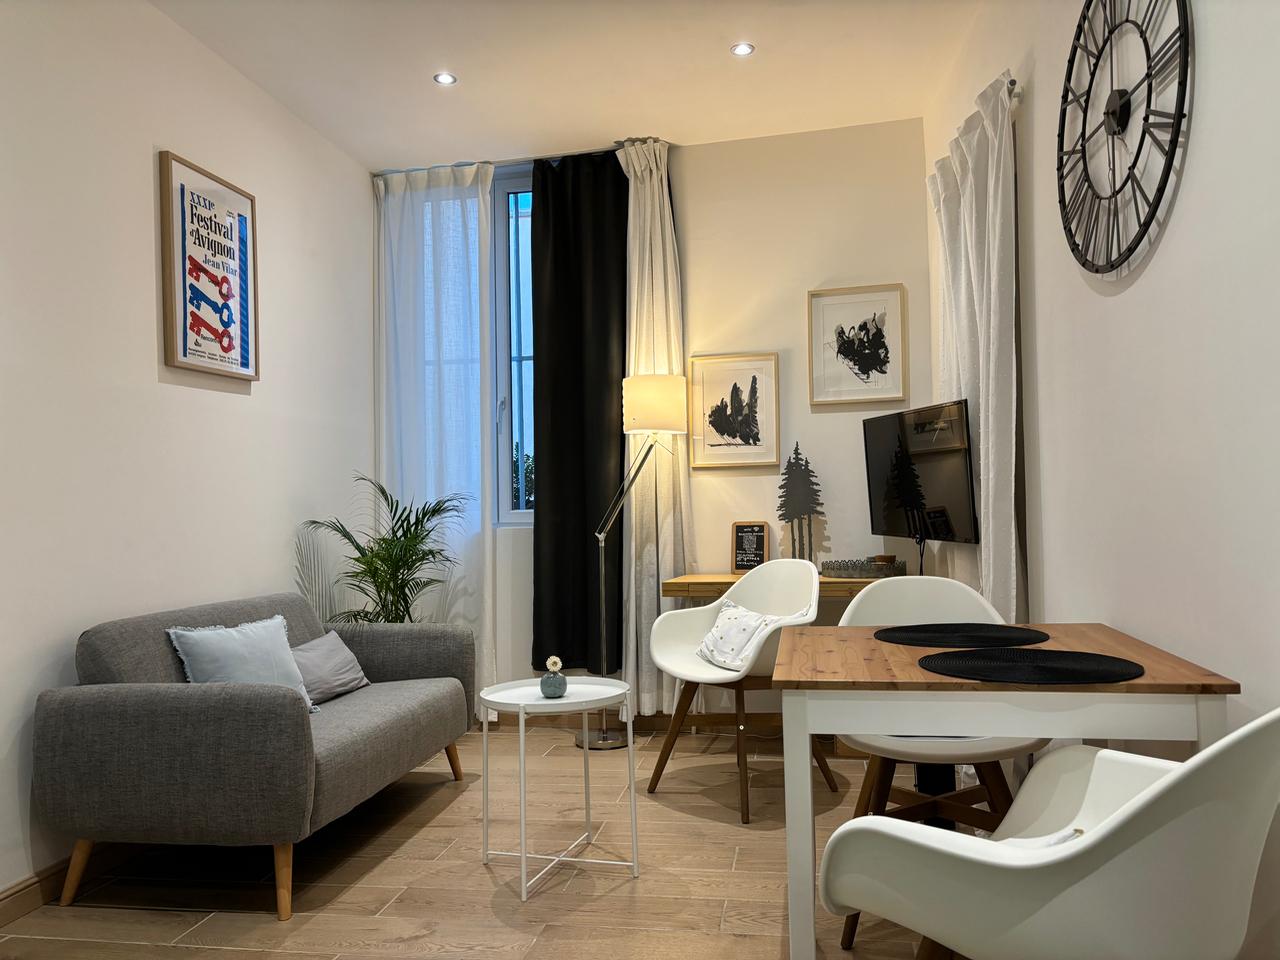 Hôte GreenGo: Appartement Ô 41 charmant cosy calme climatisé Avignon centre historique - Image 13